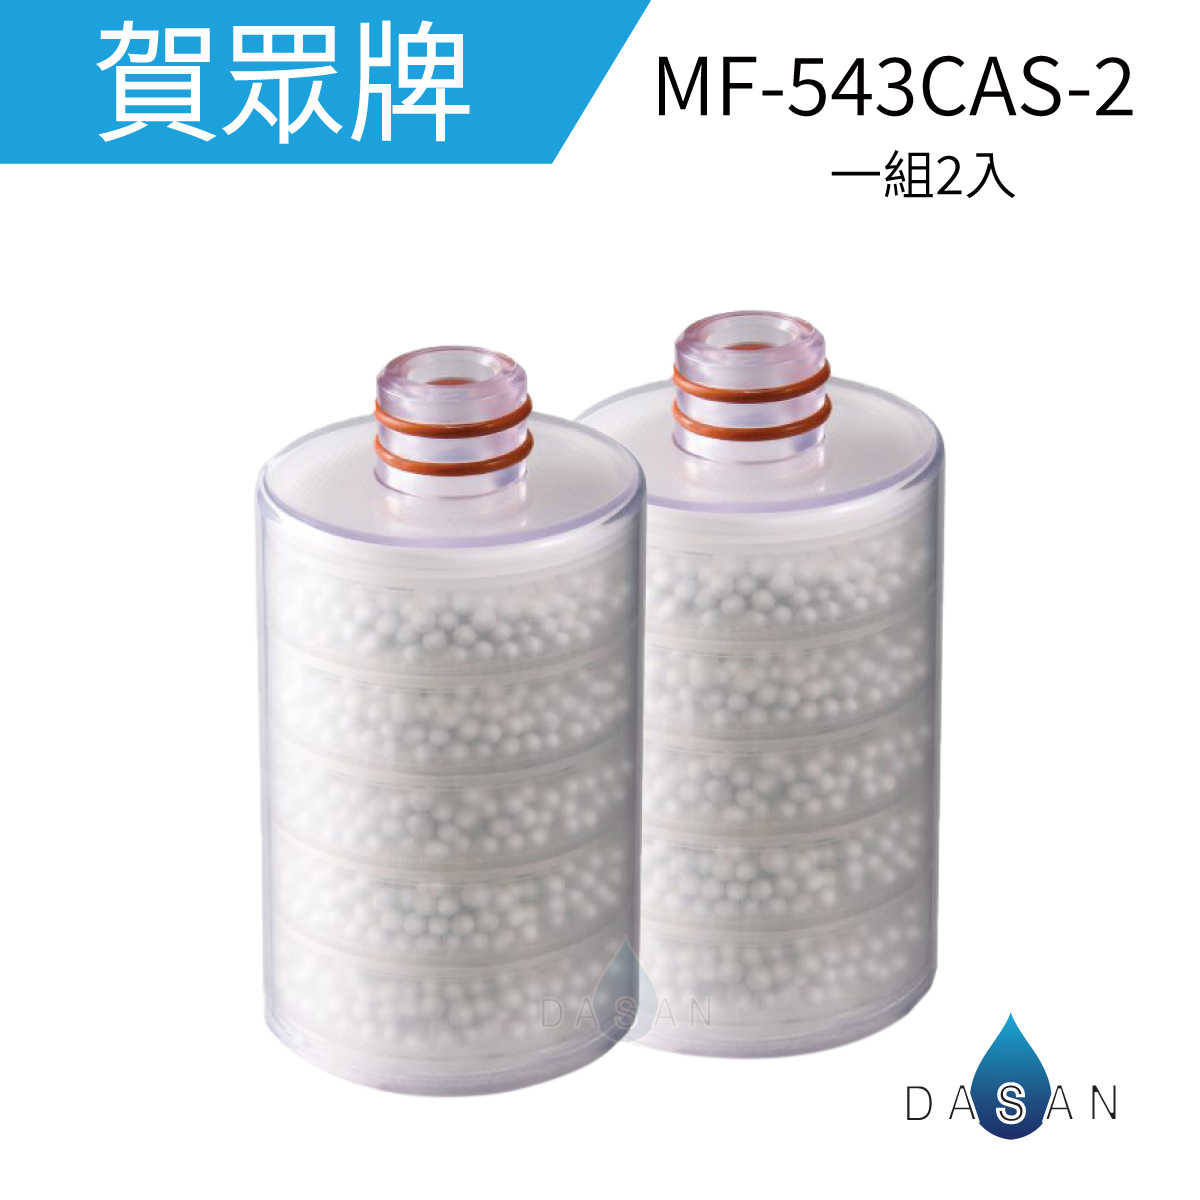 【賀眾牌】MF-543CAS-2 MF543CA 奈米晶透美肌沐浴組 沐浴用 浴室 替換濾芯(兩支入) UP26 沐浴器